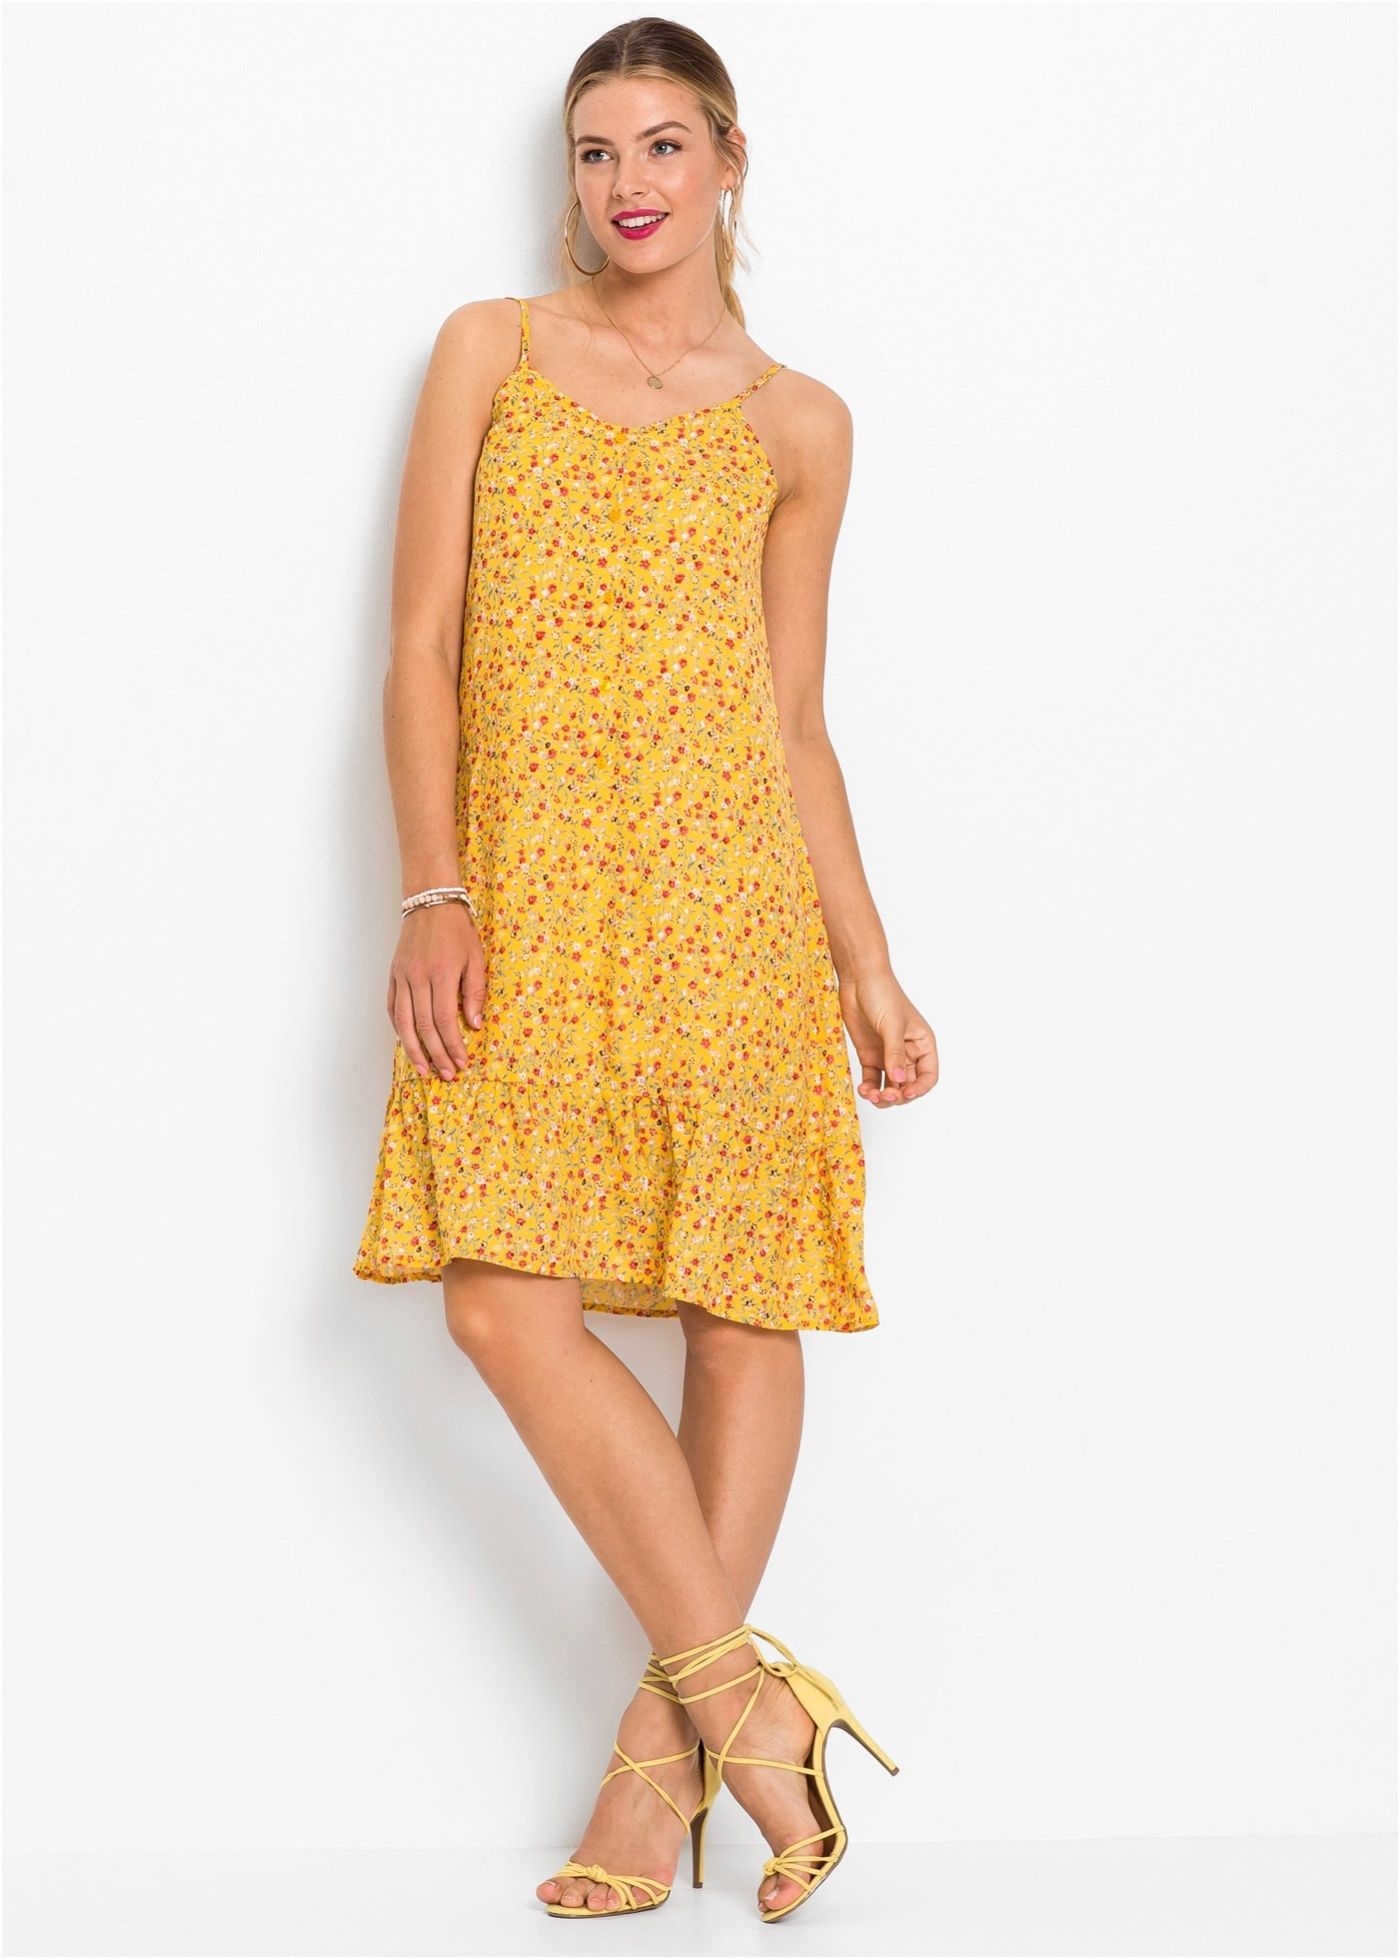 *B.P.C sukienka na ramiączka żółta w kwiaty 40.